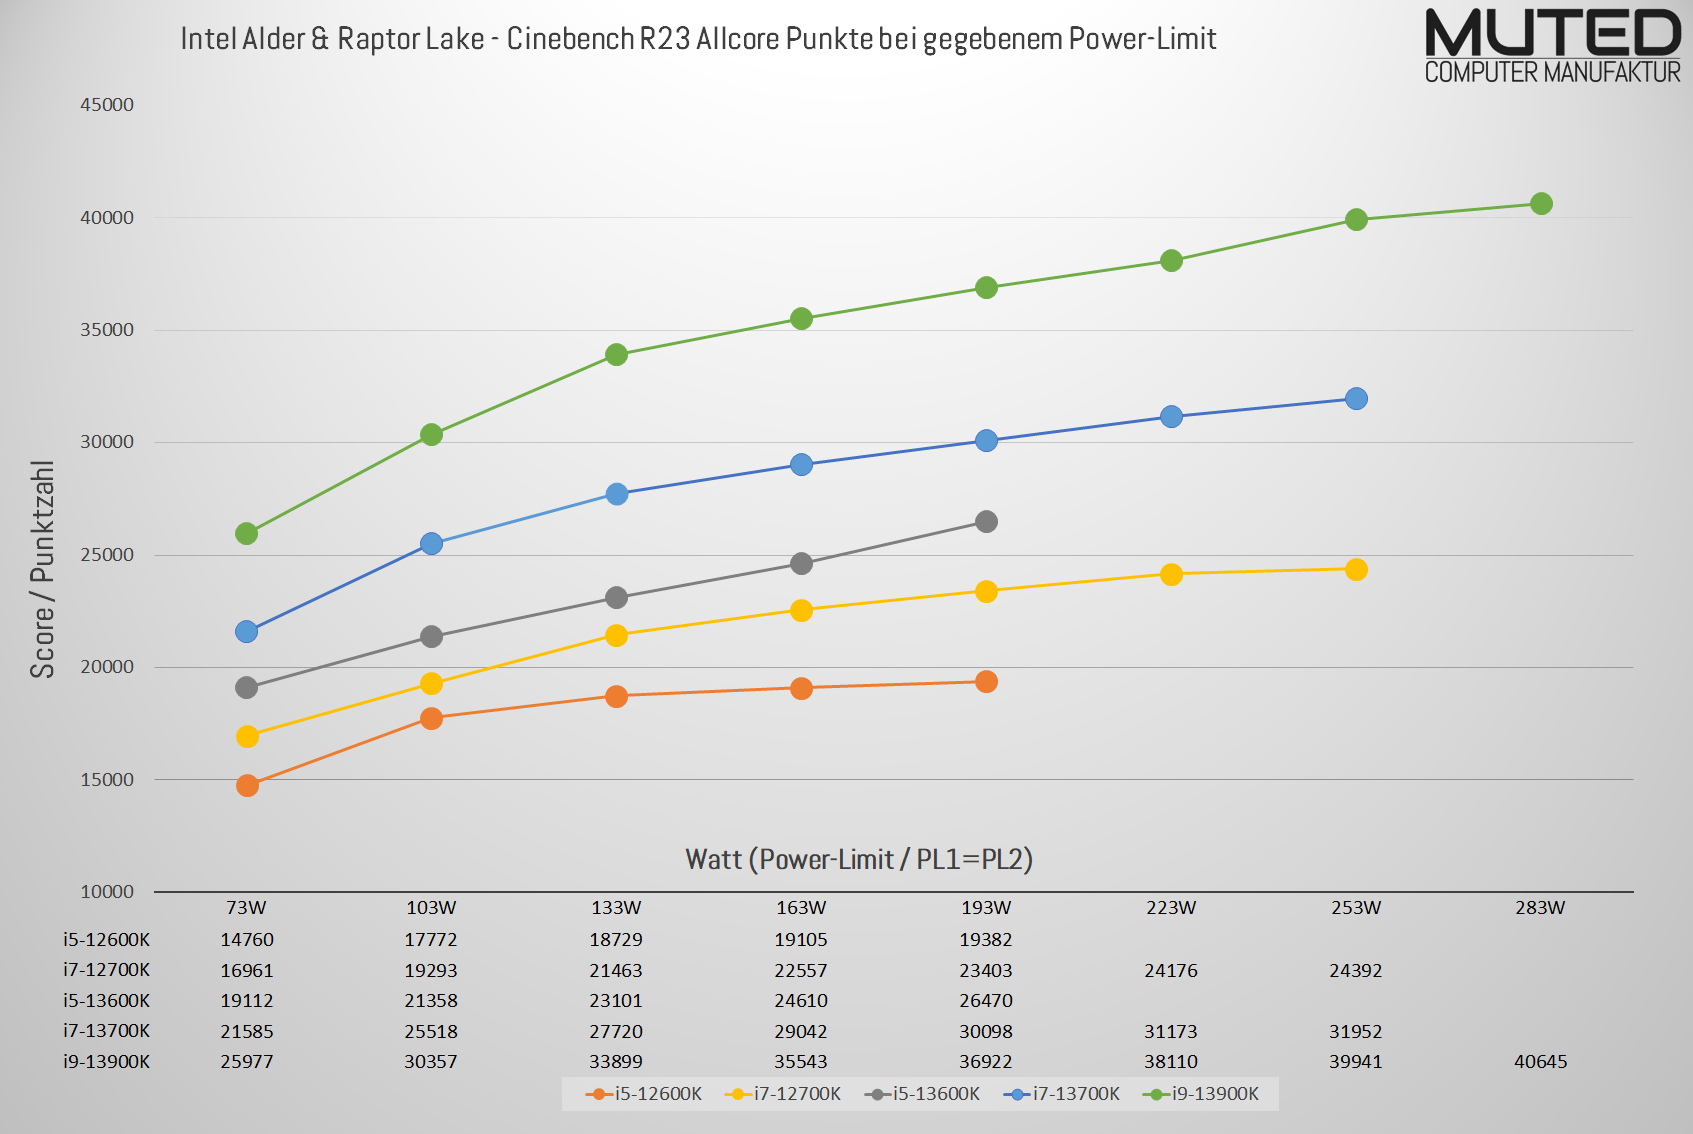 Intel Alder & Raptor Lake - Cinebench R23 Allcore Scores entsprechend Power-Limit